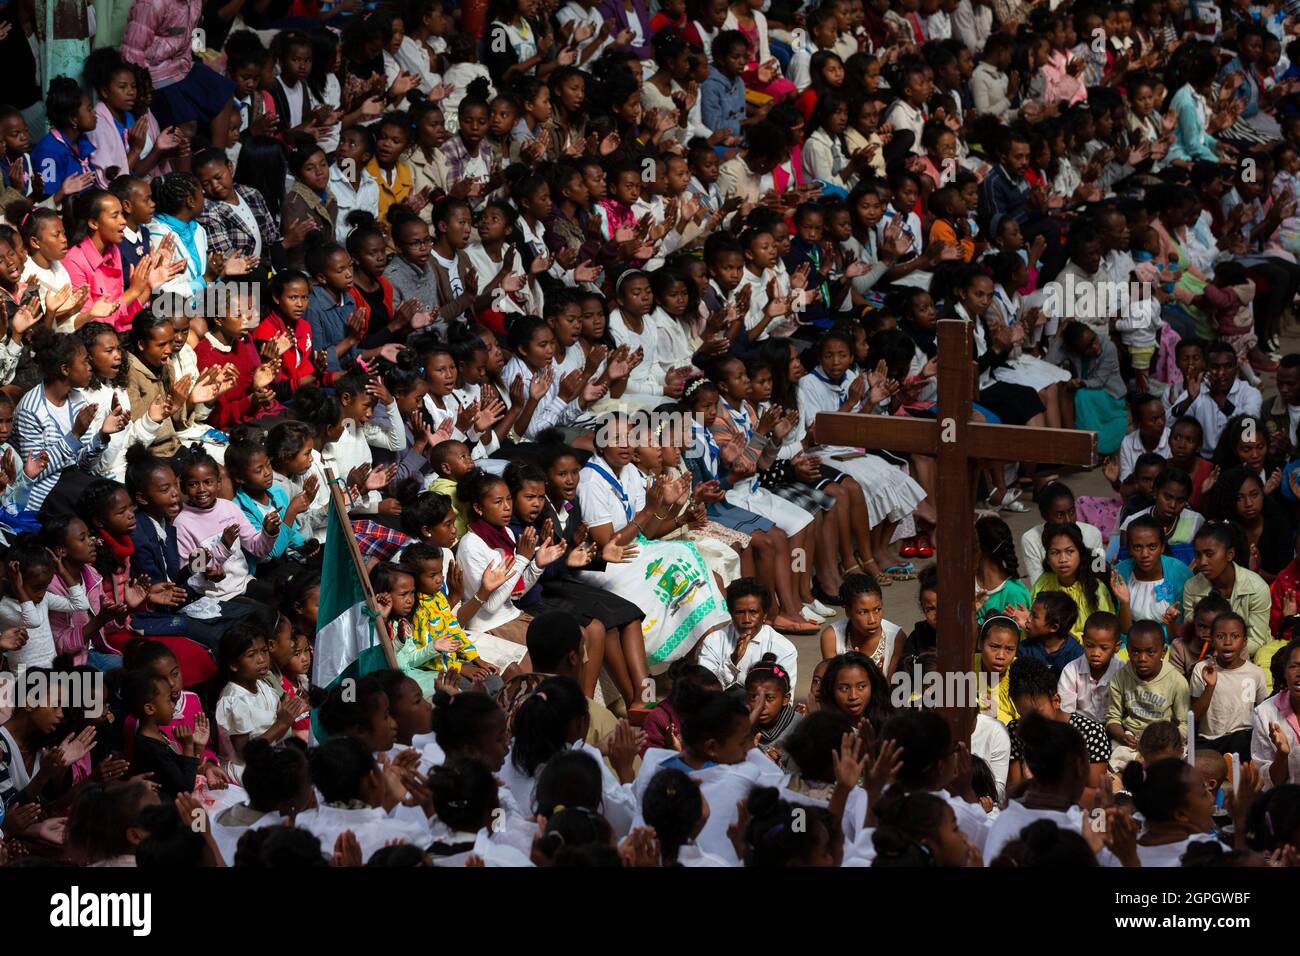 Madagascar, Analamanga region, Antananarivo (Antananarivo or Tana), Father Pedro's mass on Sunday morning Stock Photo